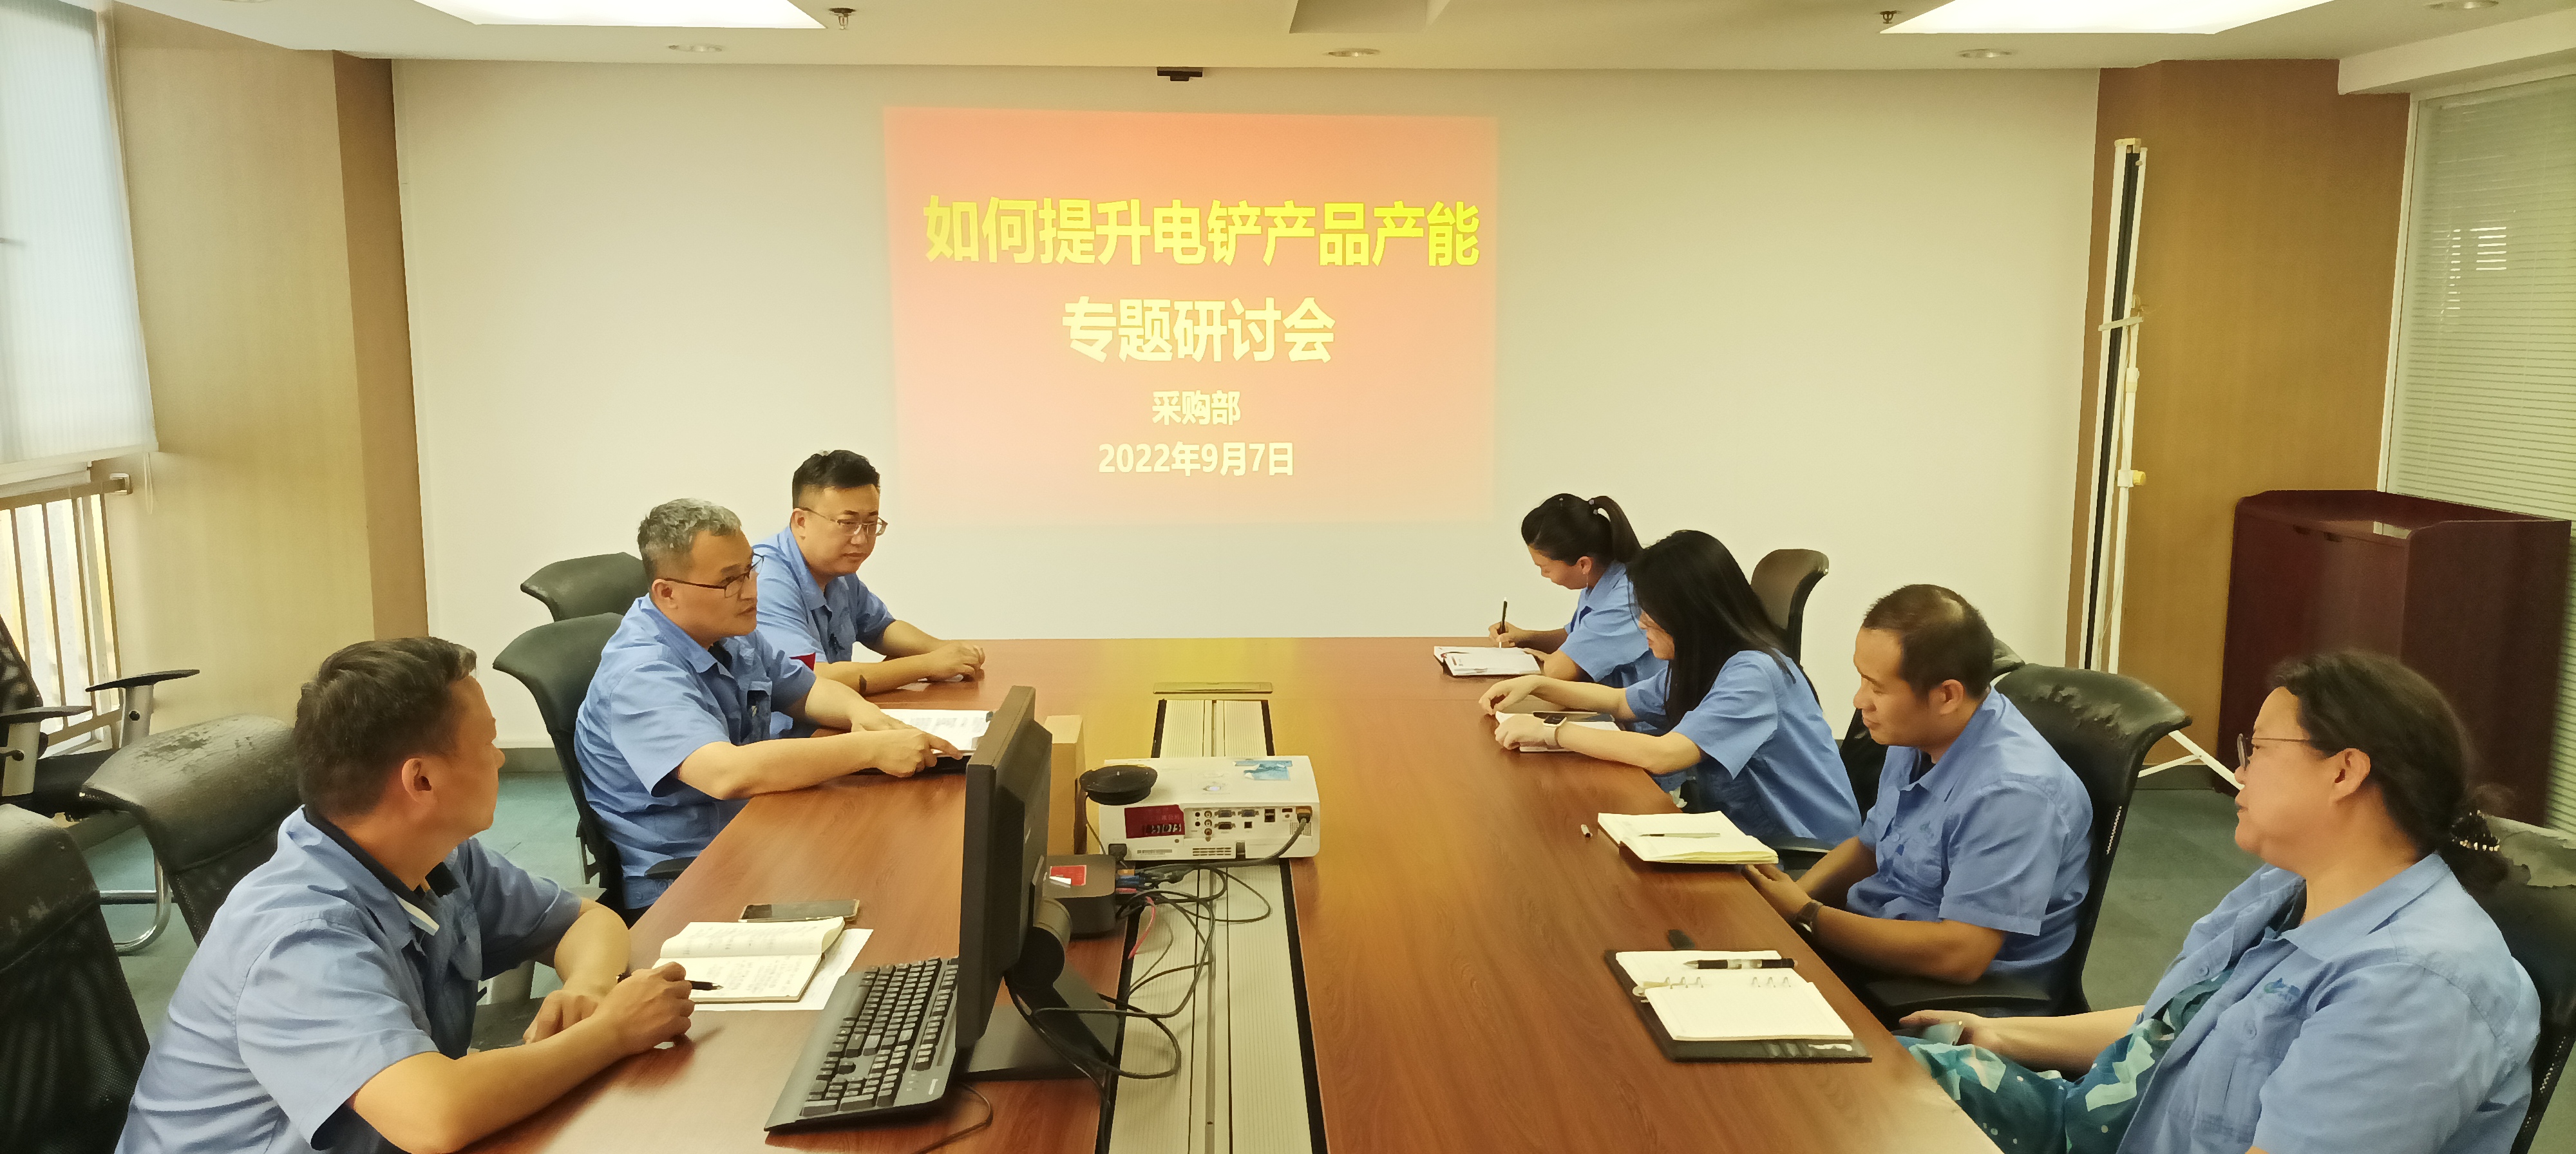 天津重工开展电铲产能提升专题研讨活动